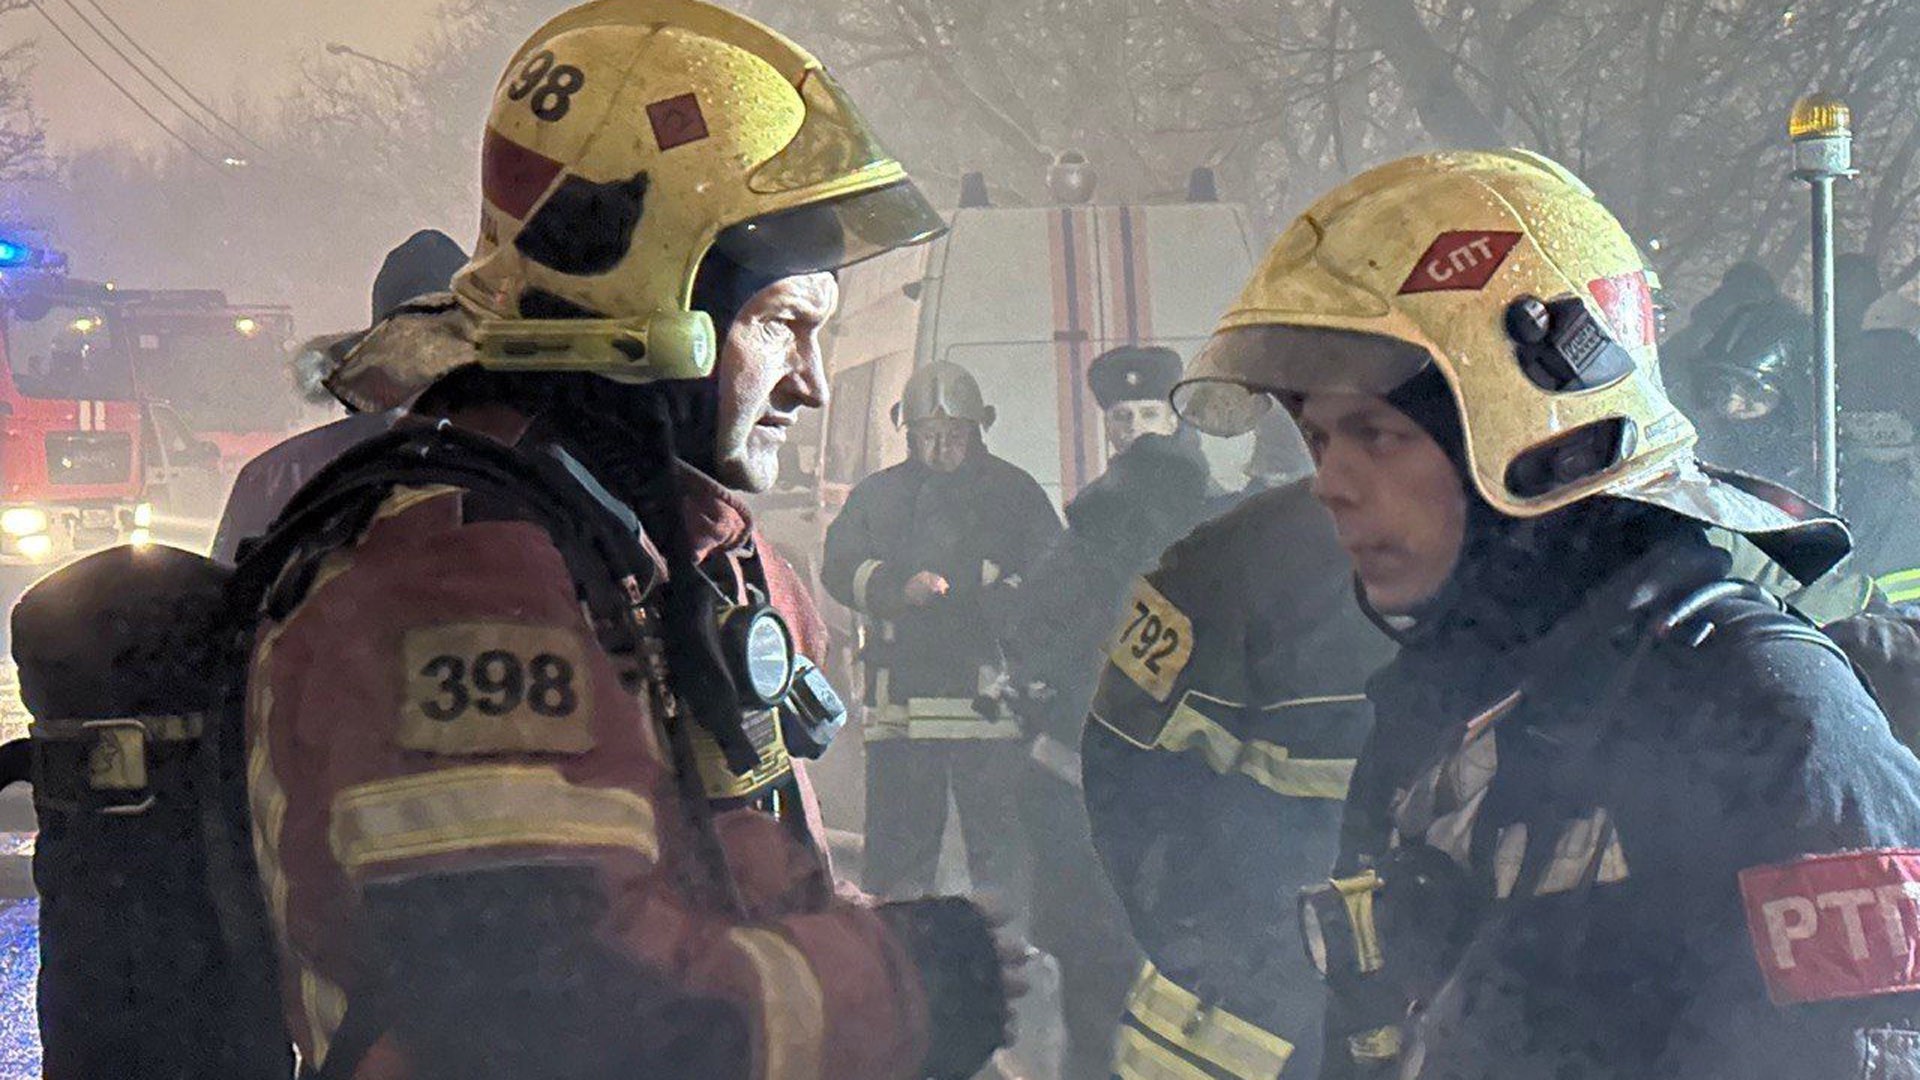 Площадь пожара в жилом доме в Москве составляет четыре тысячи квадратных метров